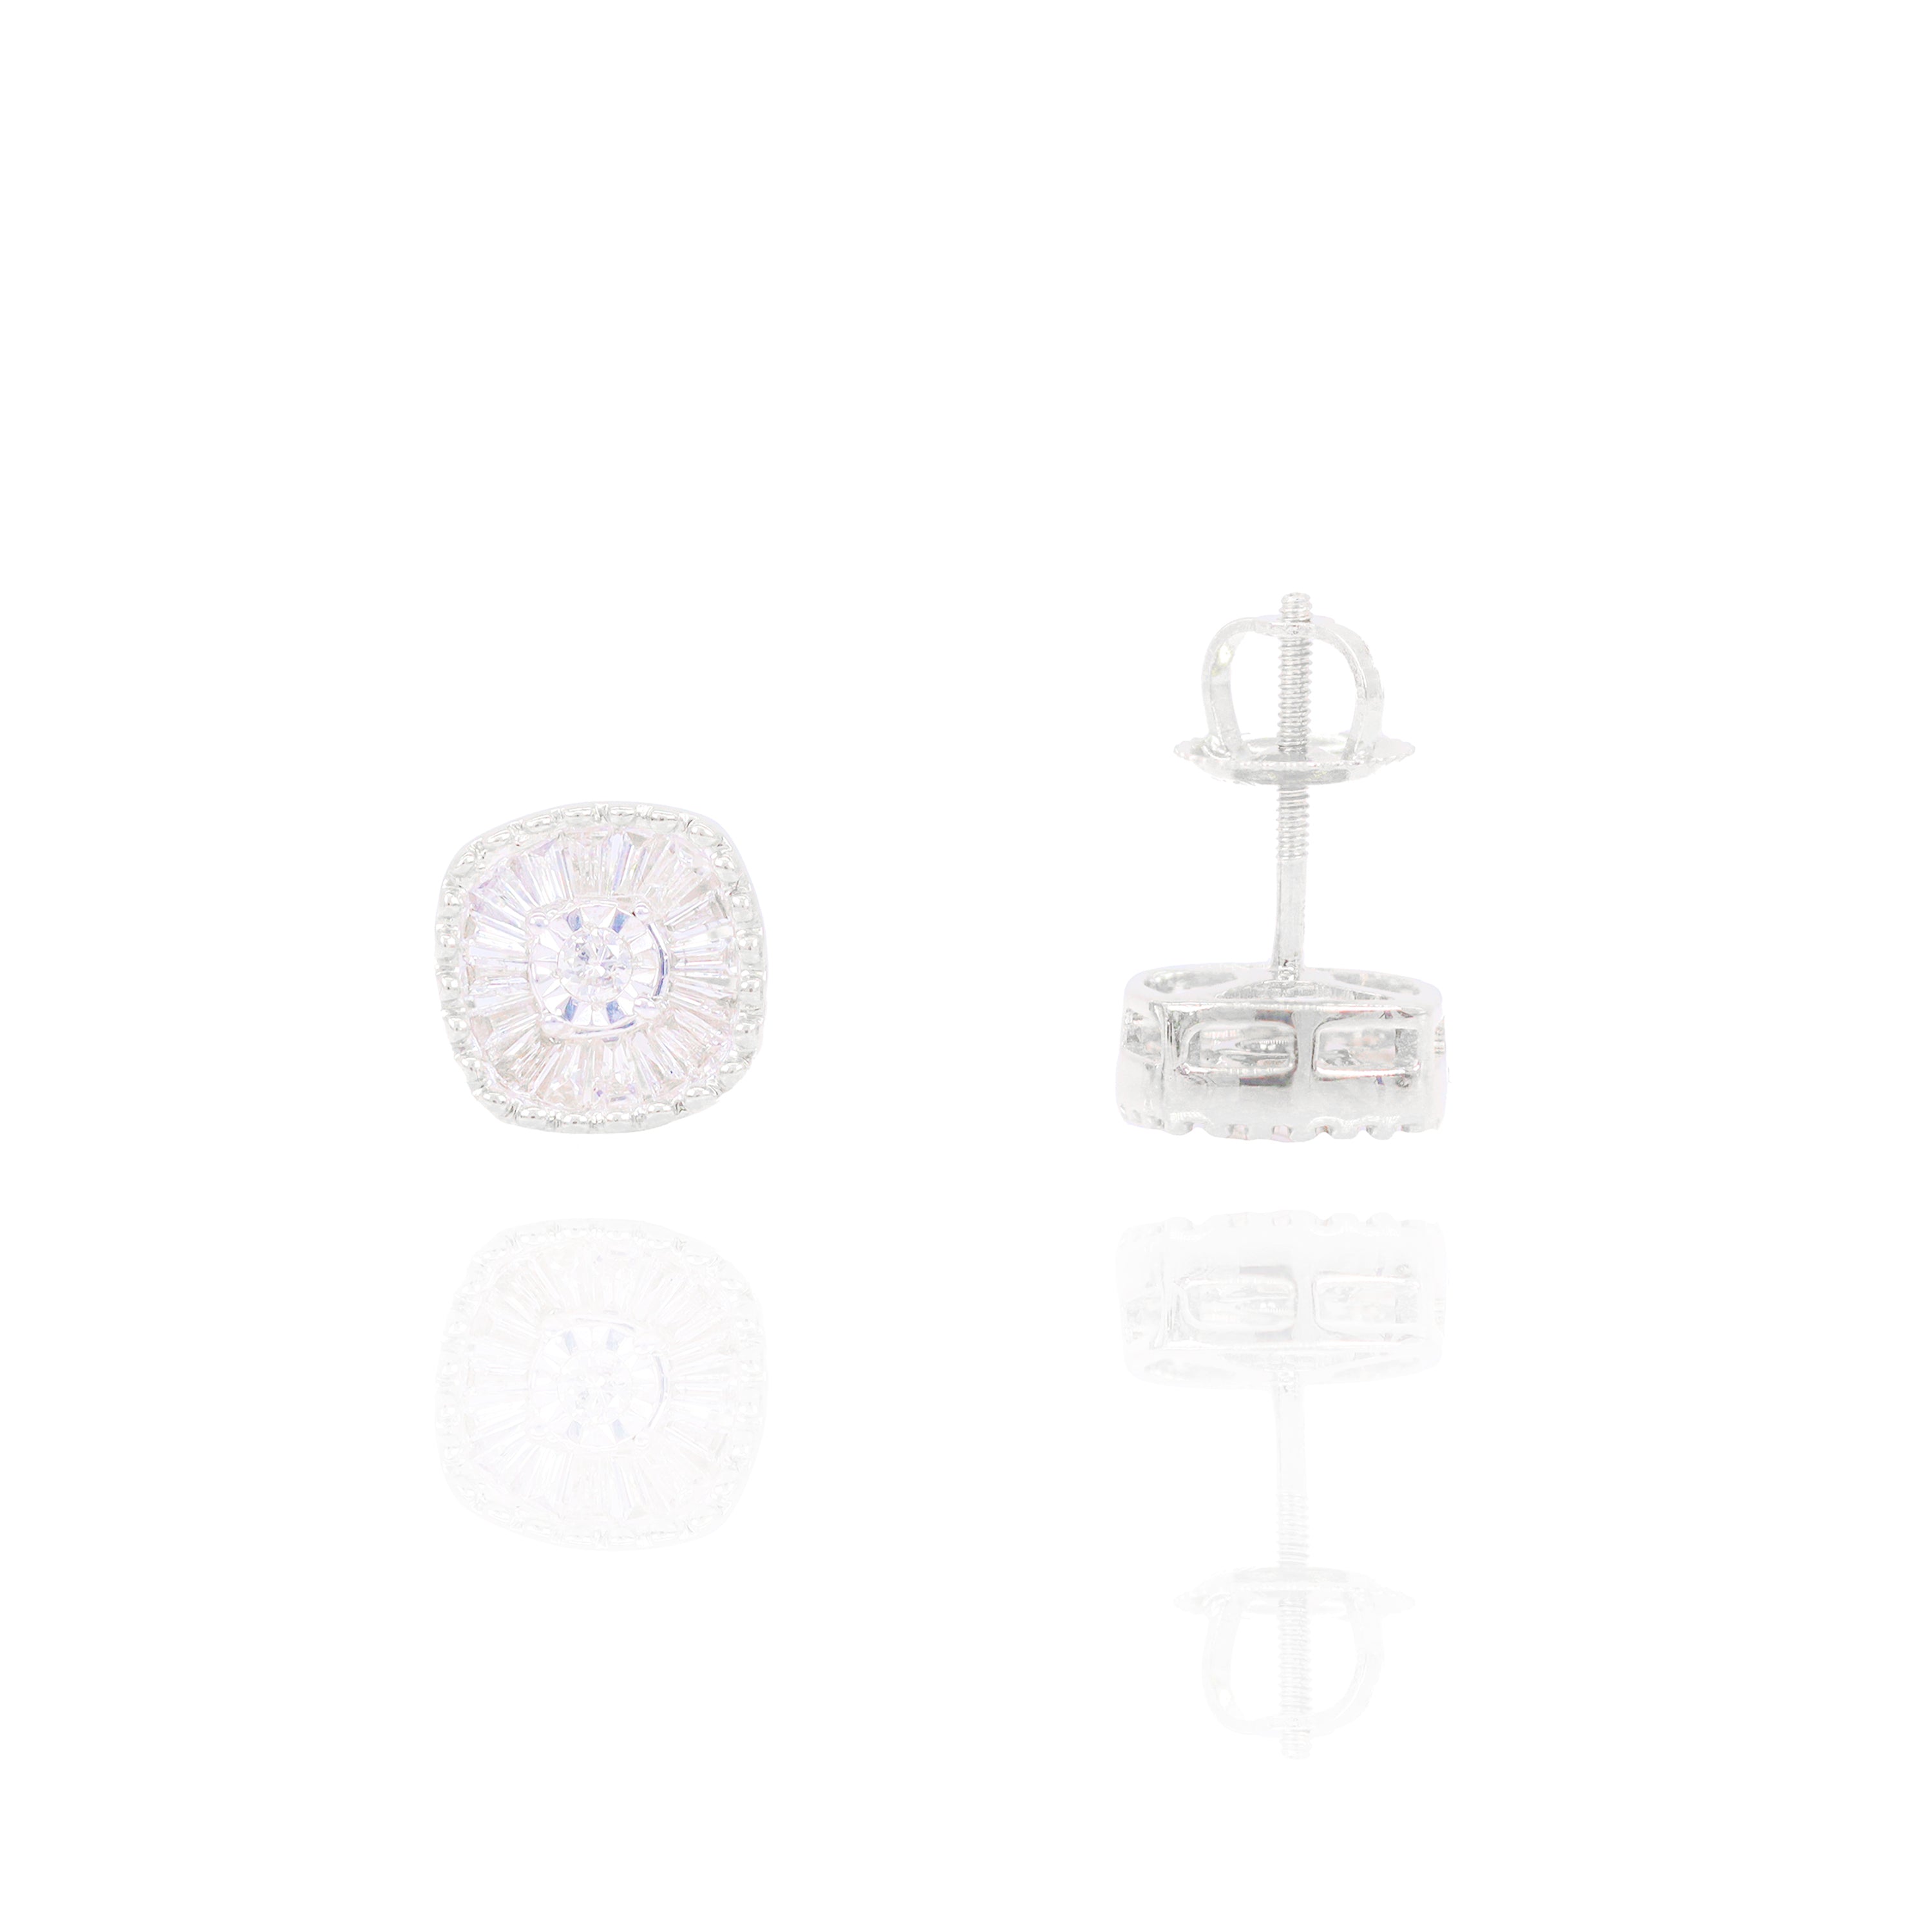 Channel Set Baguette Cluster Diamond Earrings